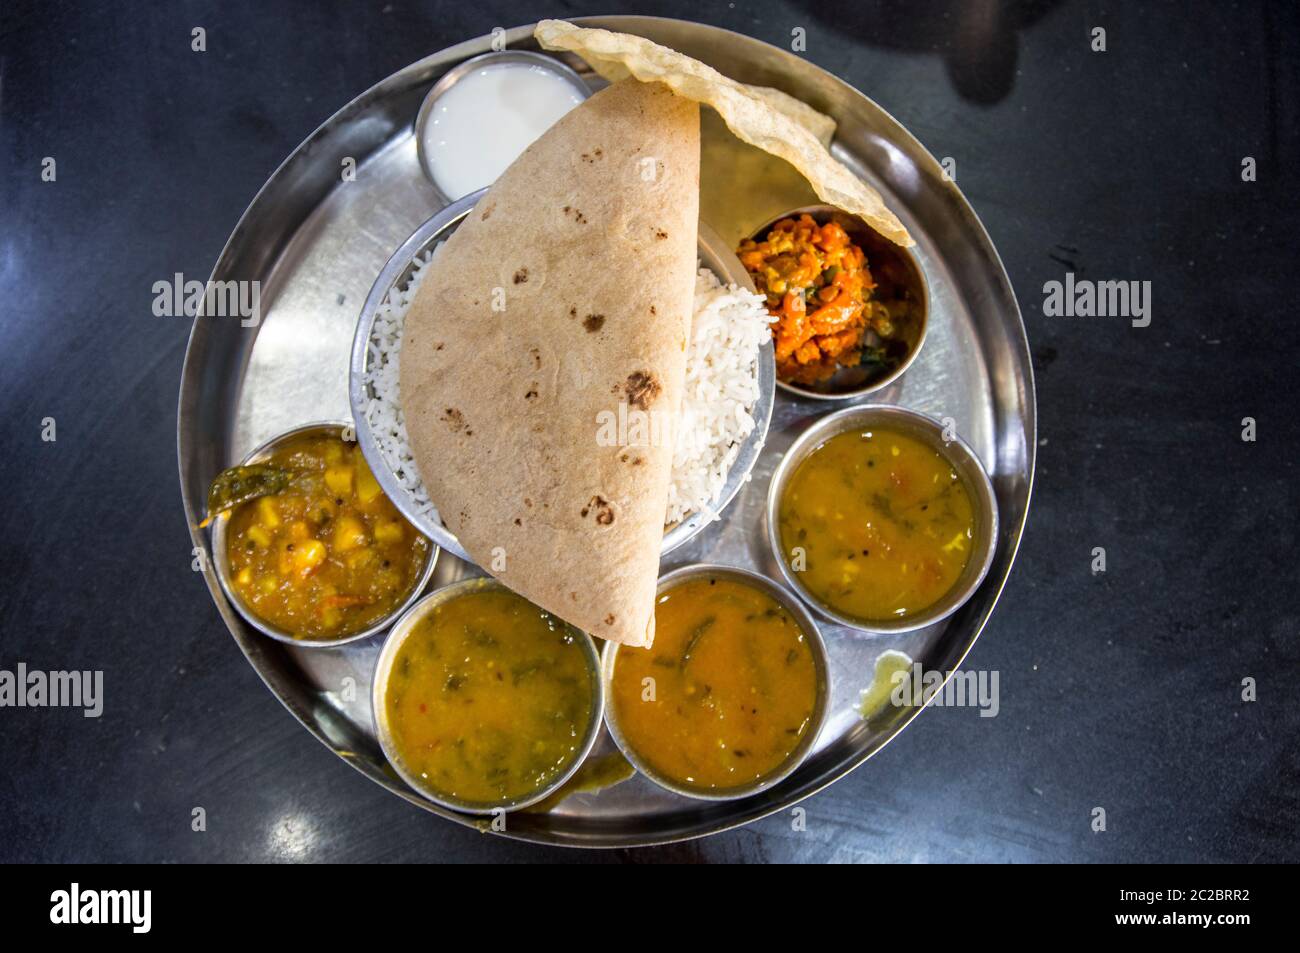 Die Vorbereitung und den Verkauf von indischen Straße Essen in einer Garküche. In Ahmedabad, Gujarat, Indien fotografierte Stockfoto